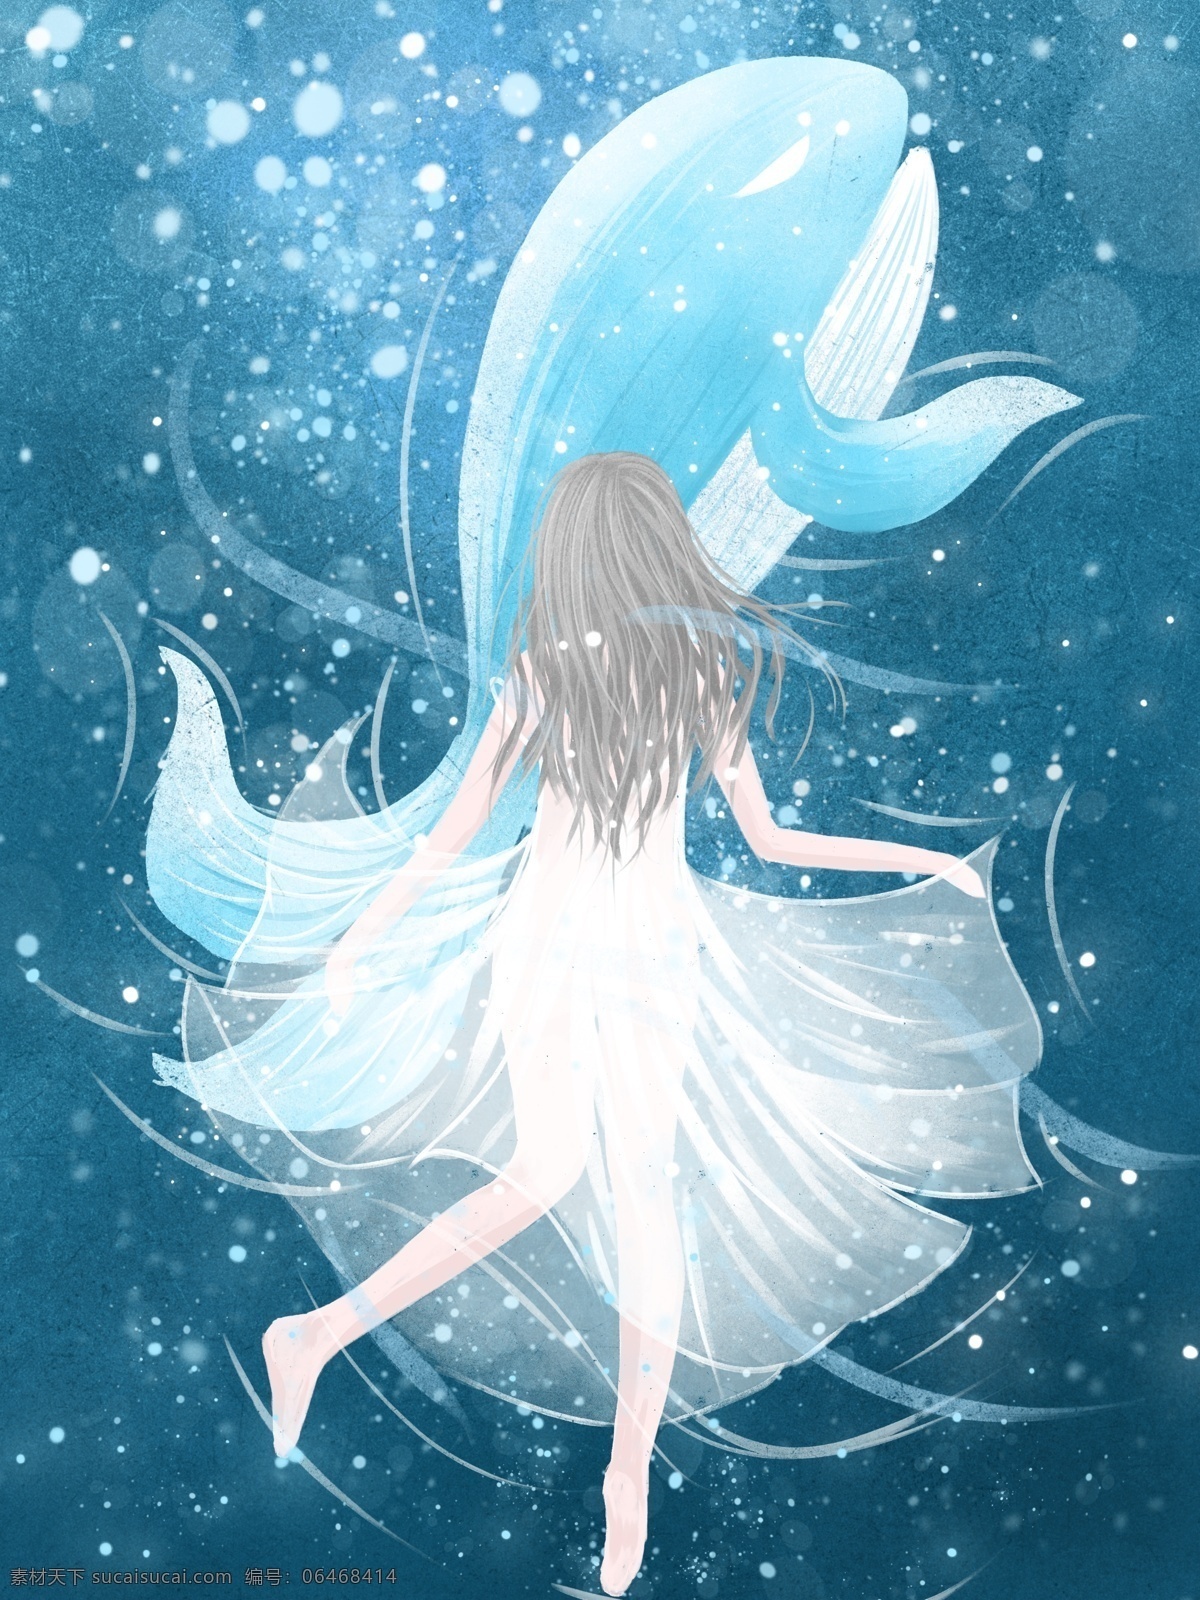 治愈 系 插画 海蓝 时见 鲸 深海 女孩 蓝色 清新 梦幻 壁纸 海 海水 白裙子 水彩 背景